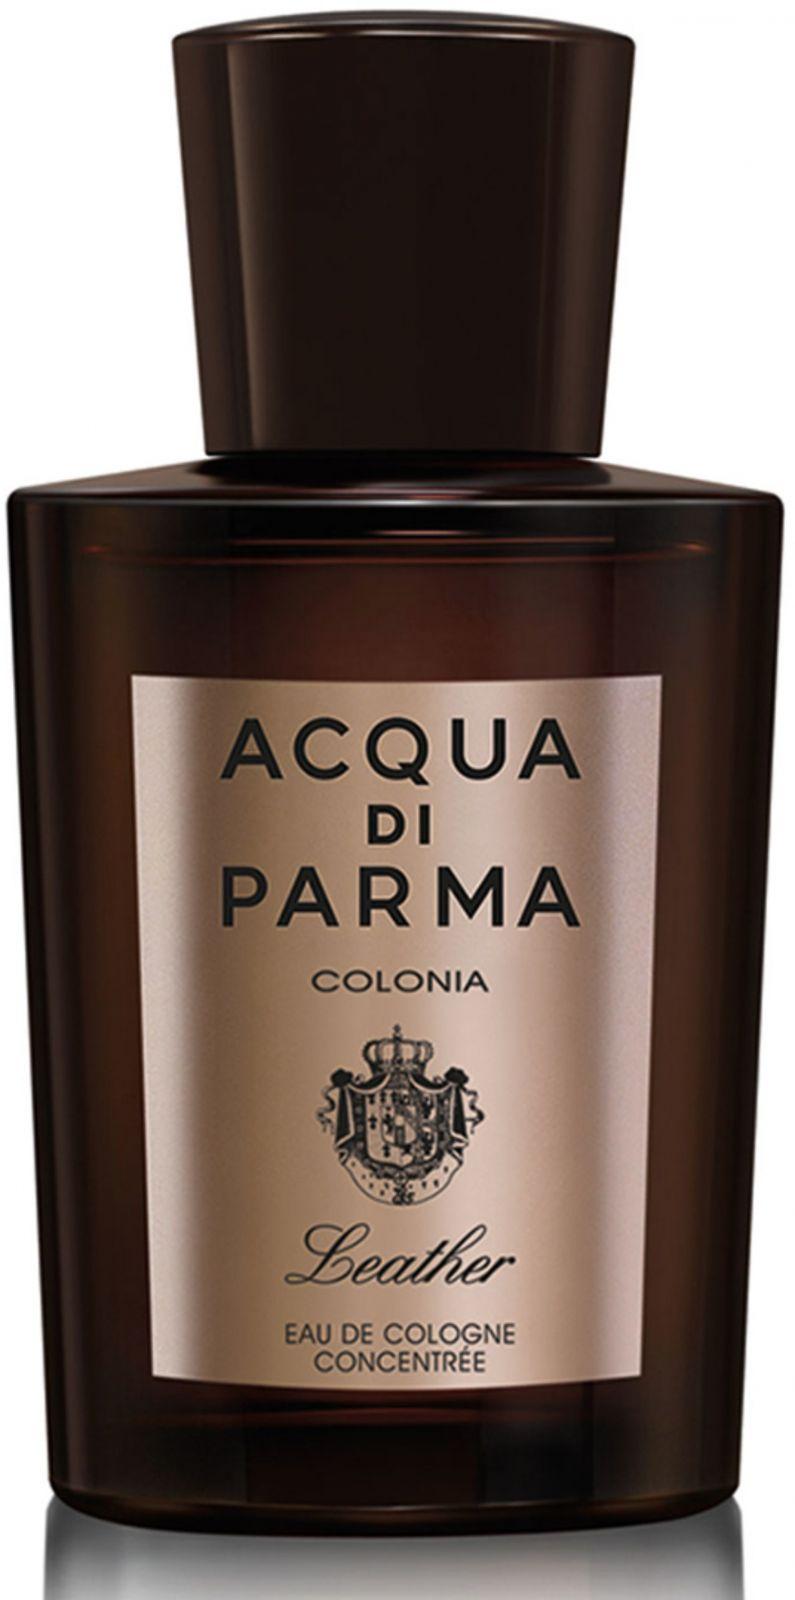 Acqua di Parma, leather collection